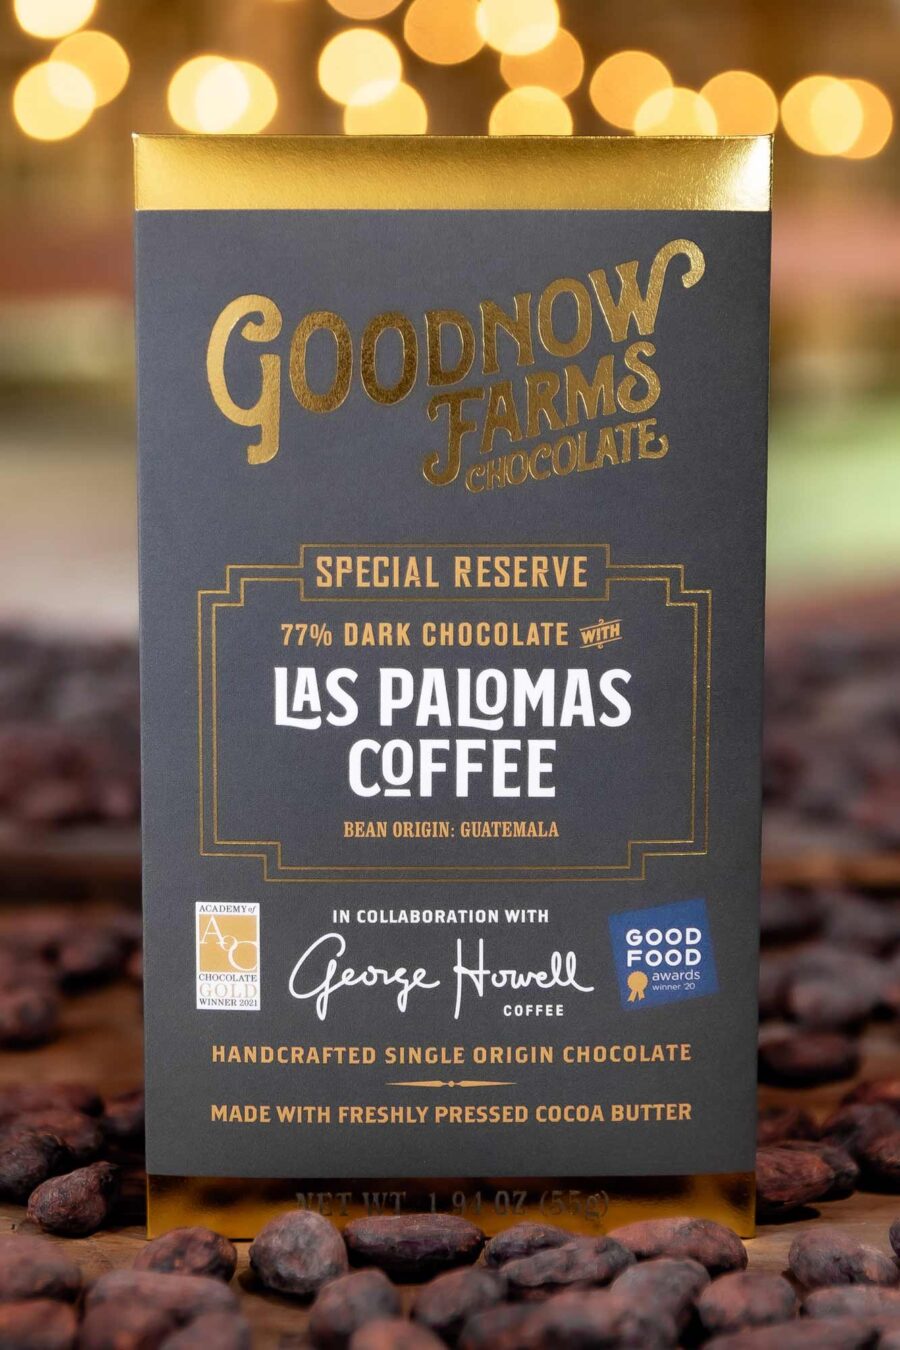 Goodnow Farms Special Reserve Guatemala 77% Dark Chocolate Bar with Las Palomas Coffee